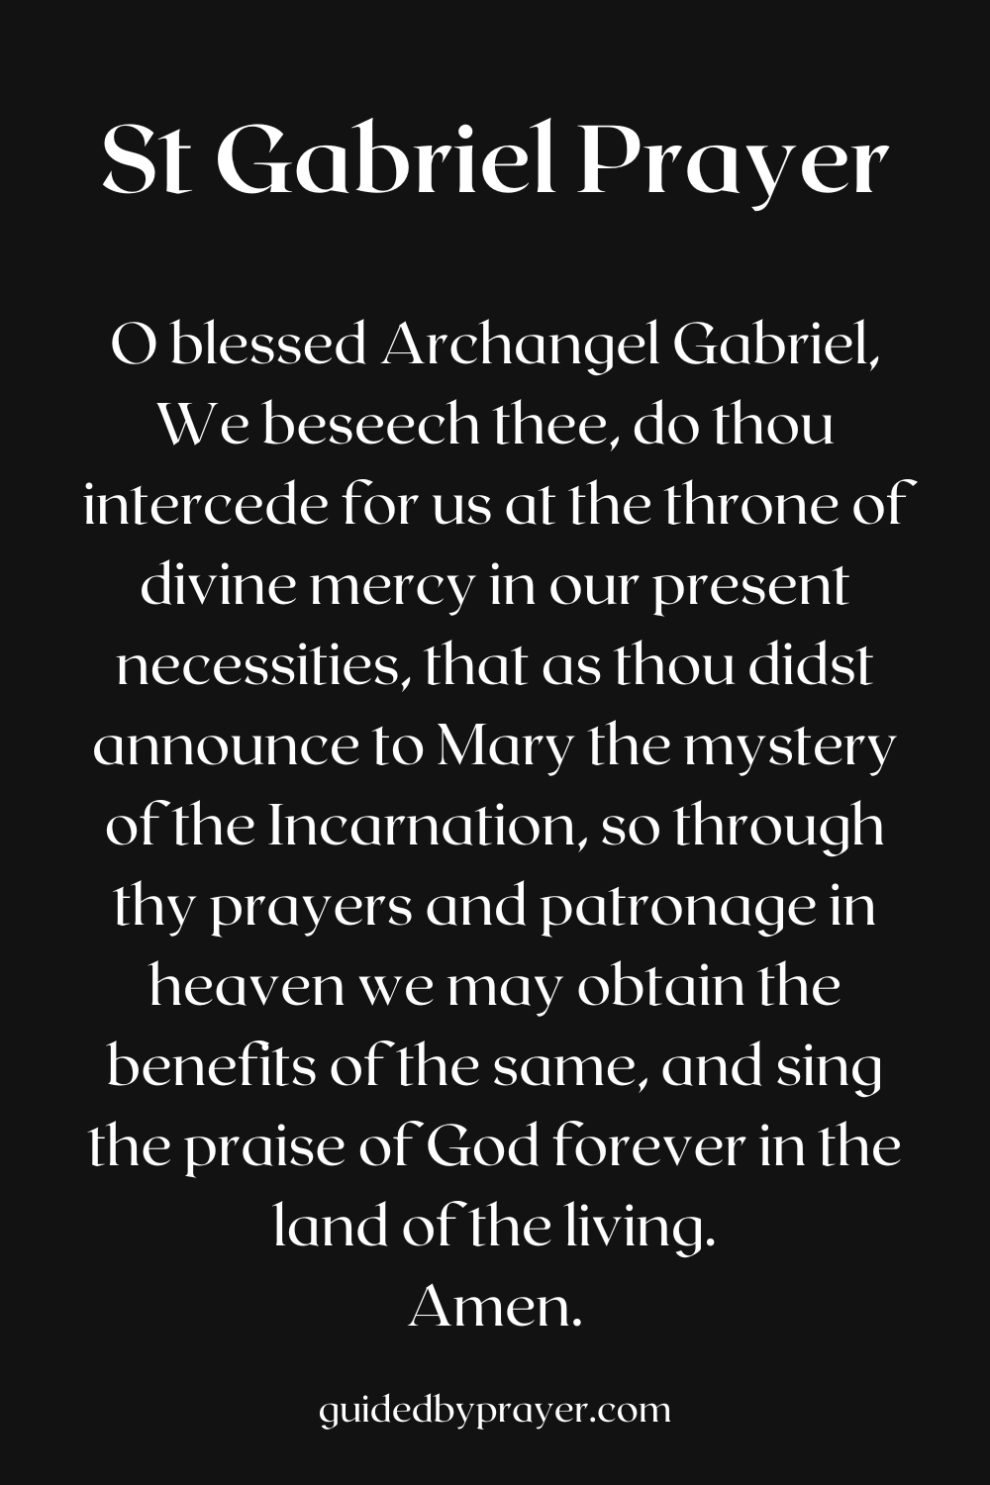 St Gabriel Prayer Guided by Prayer